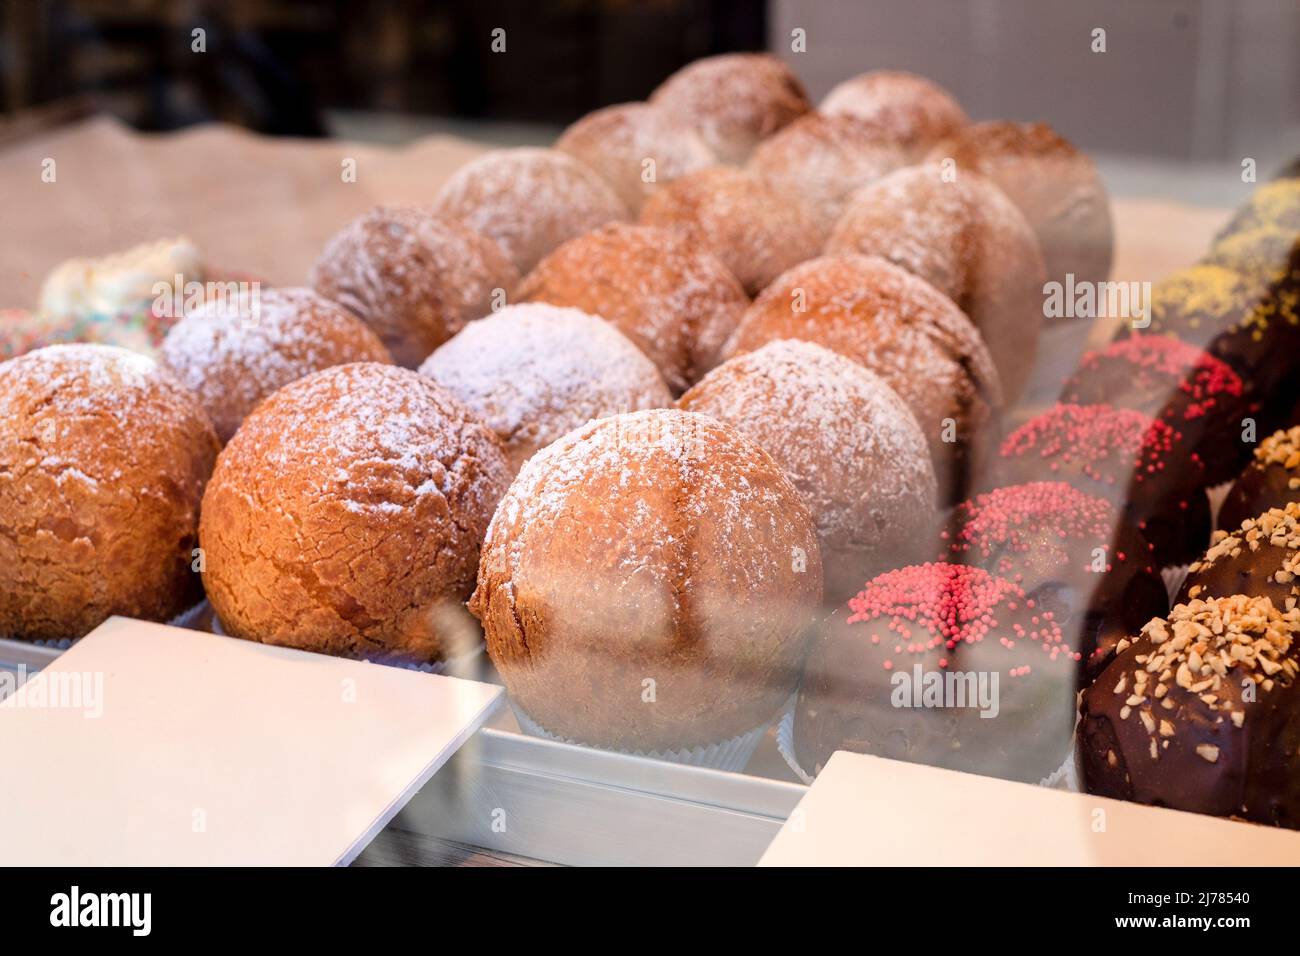 Boulangerie, salon de café, pain de sucre, bonbons, beignets Banque D'Images